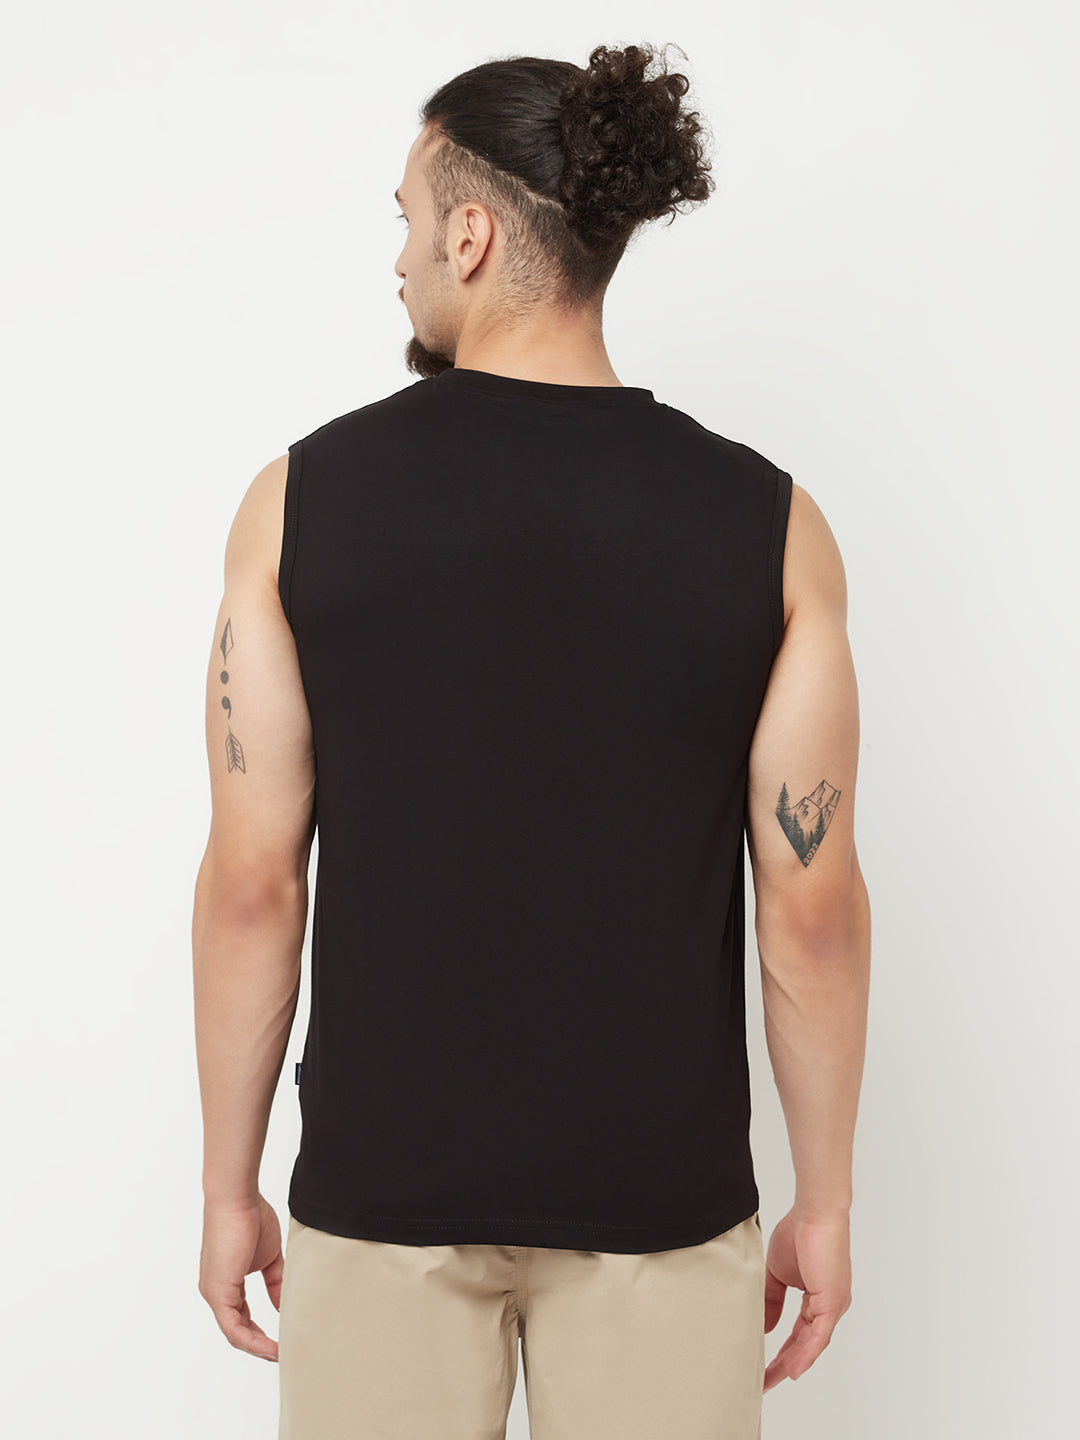 Black Printed Round Neck Lounge T-Shirt - Men T-Shirts